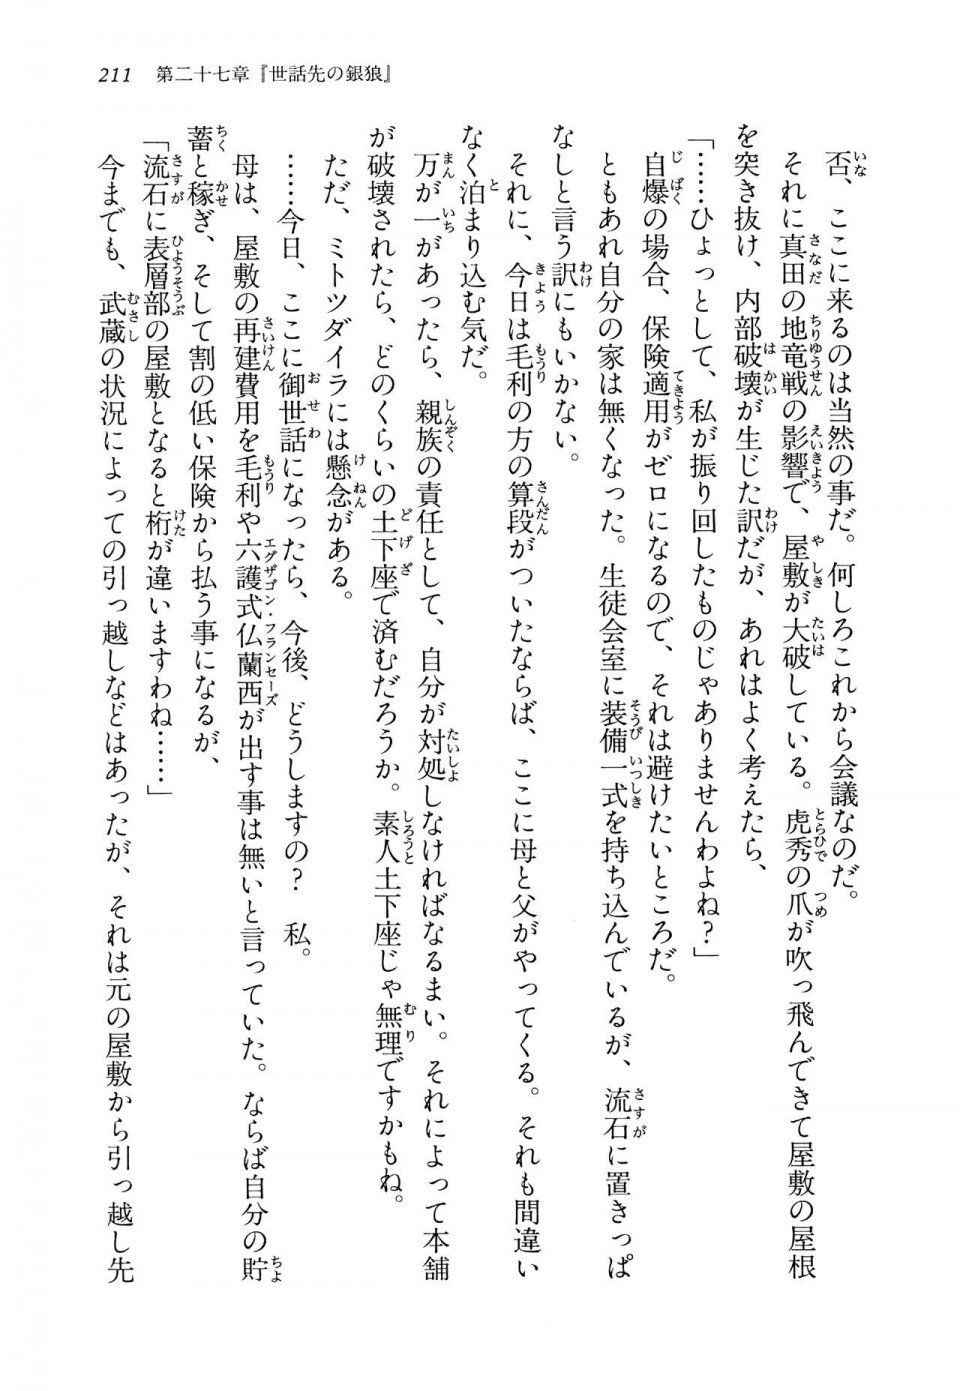 Kyoukai Senjou no Horizon LN Vol 14(6B) - Photo #211